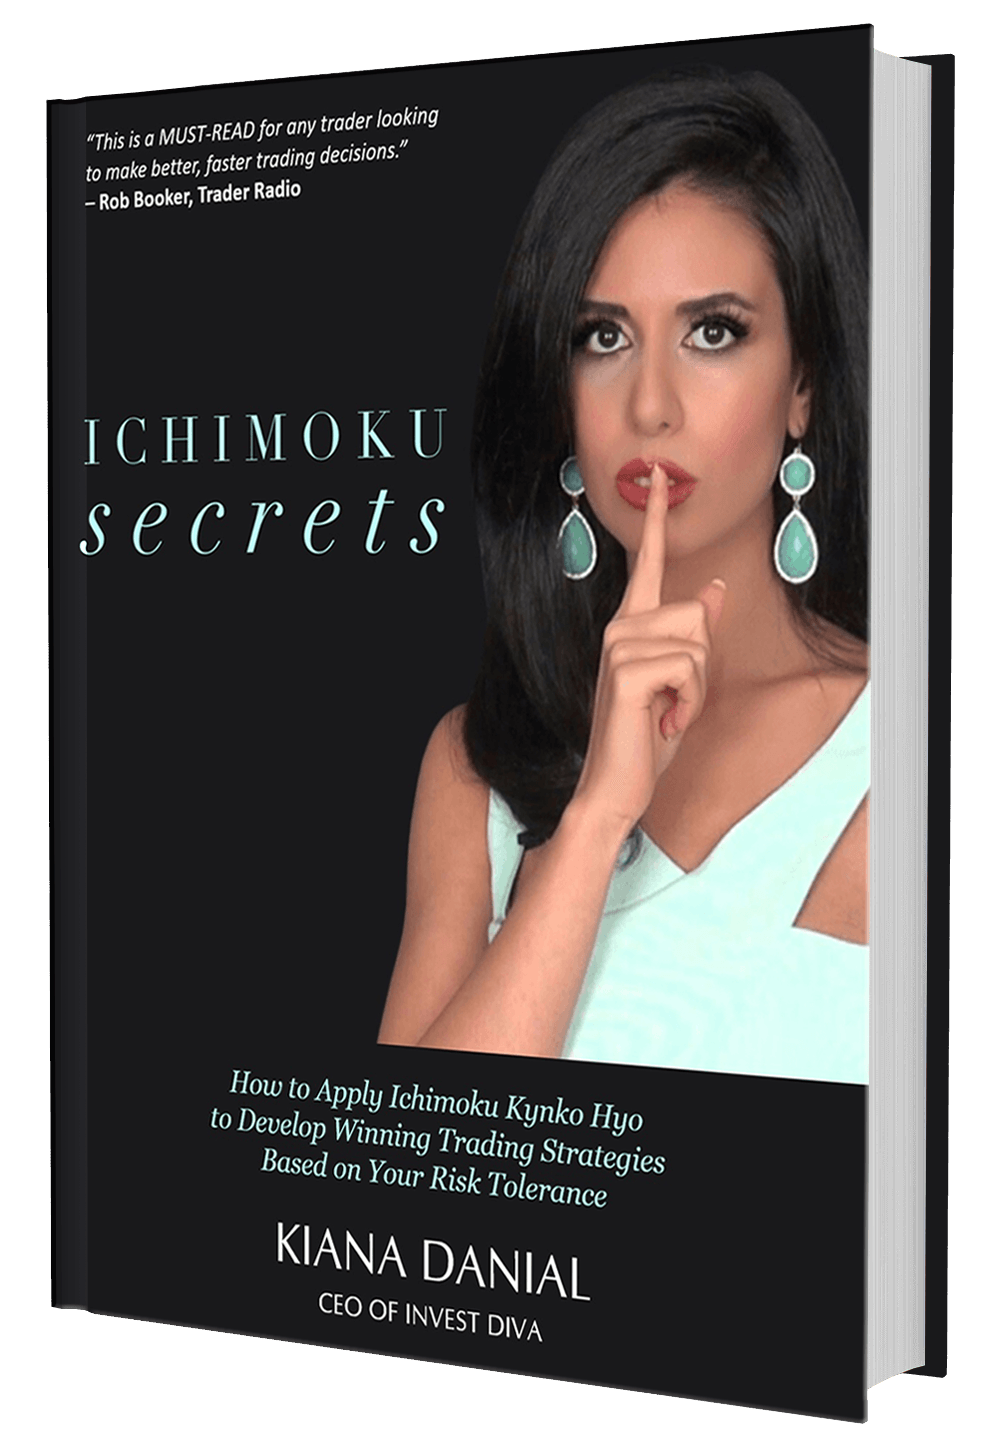 Ichimoku secrets by Kiana Danial review